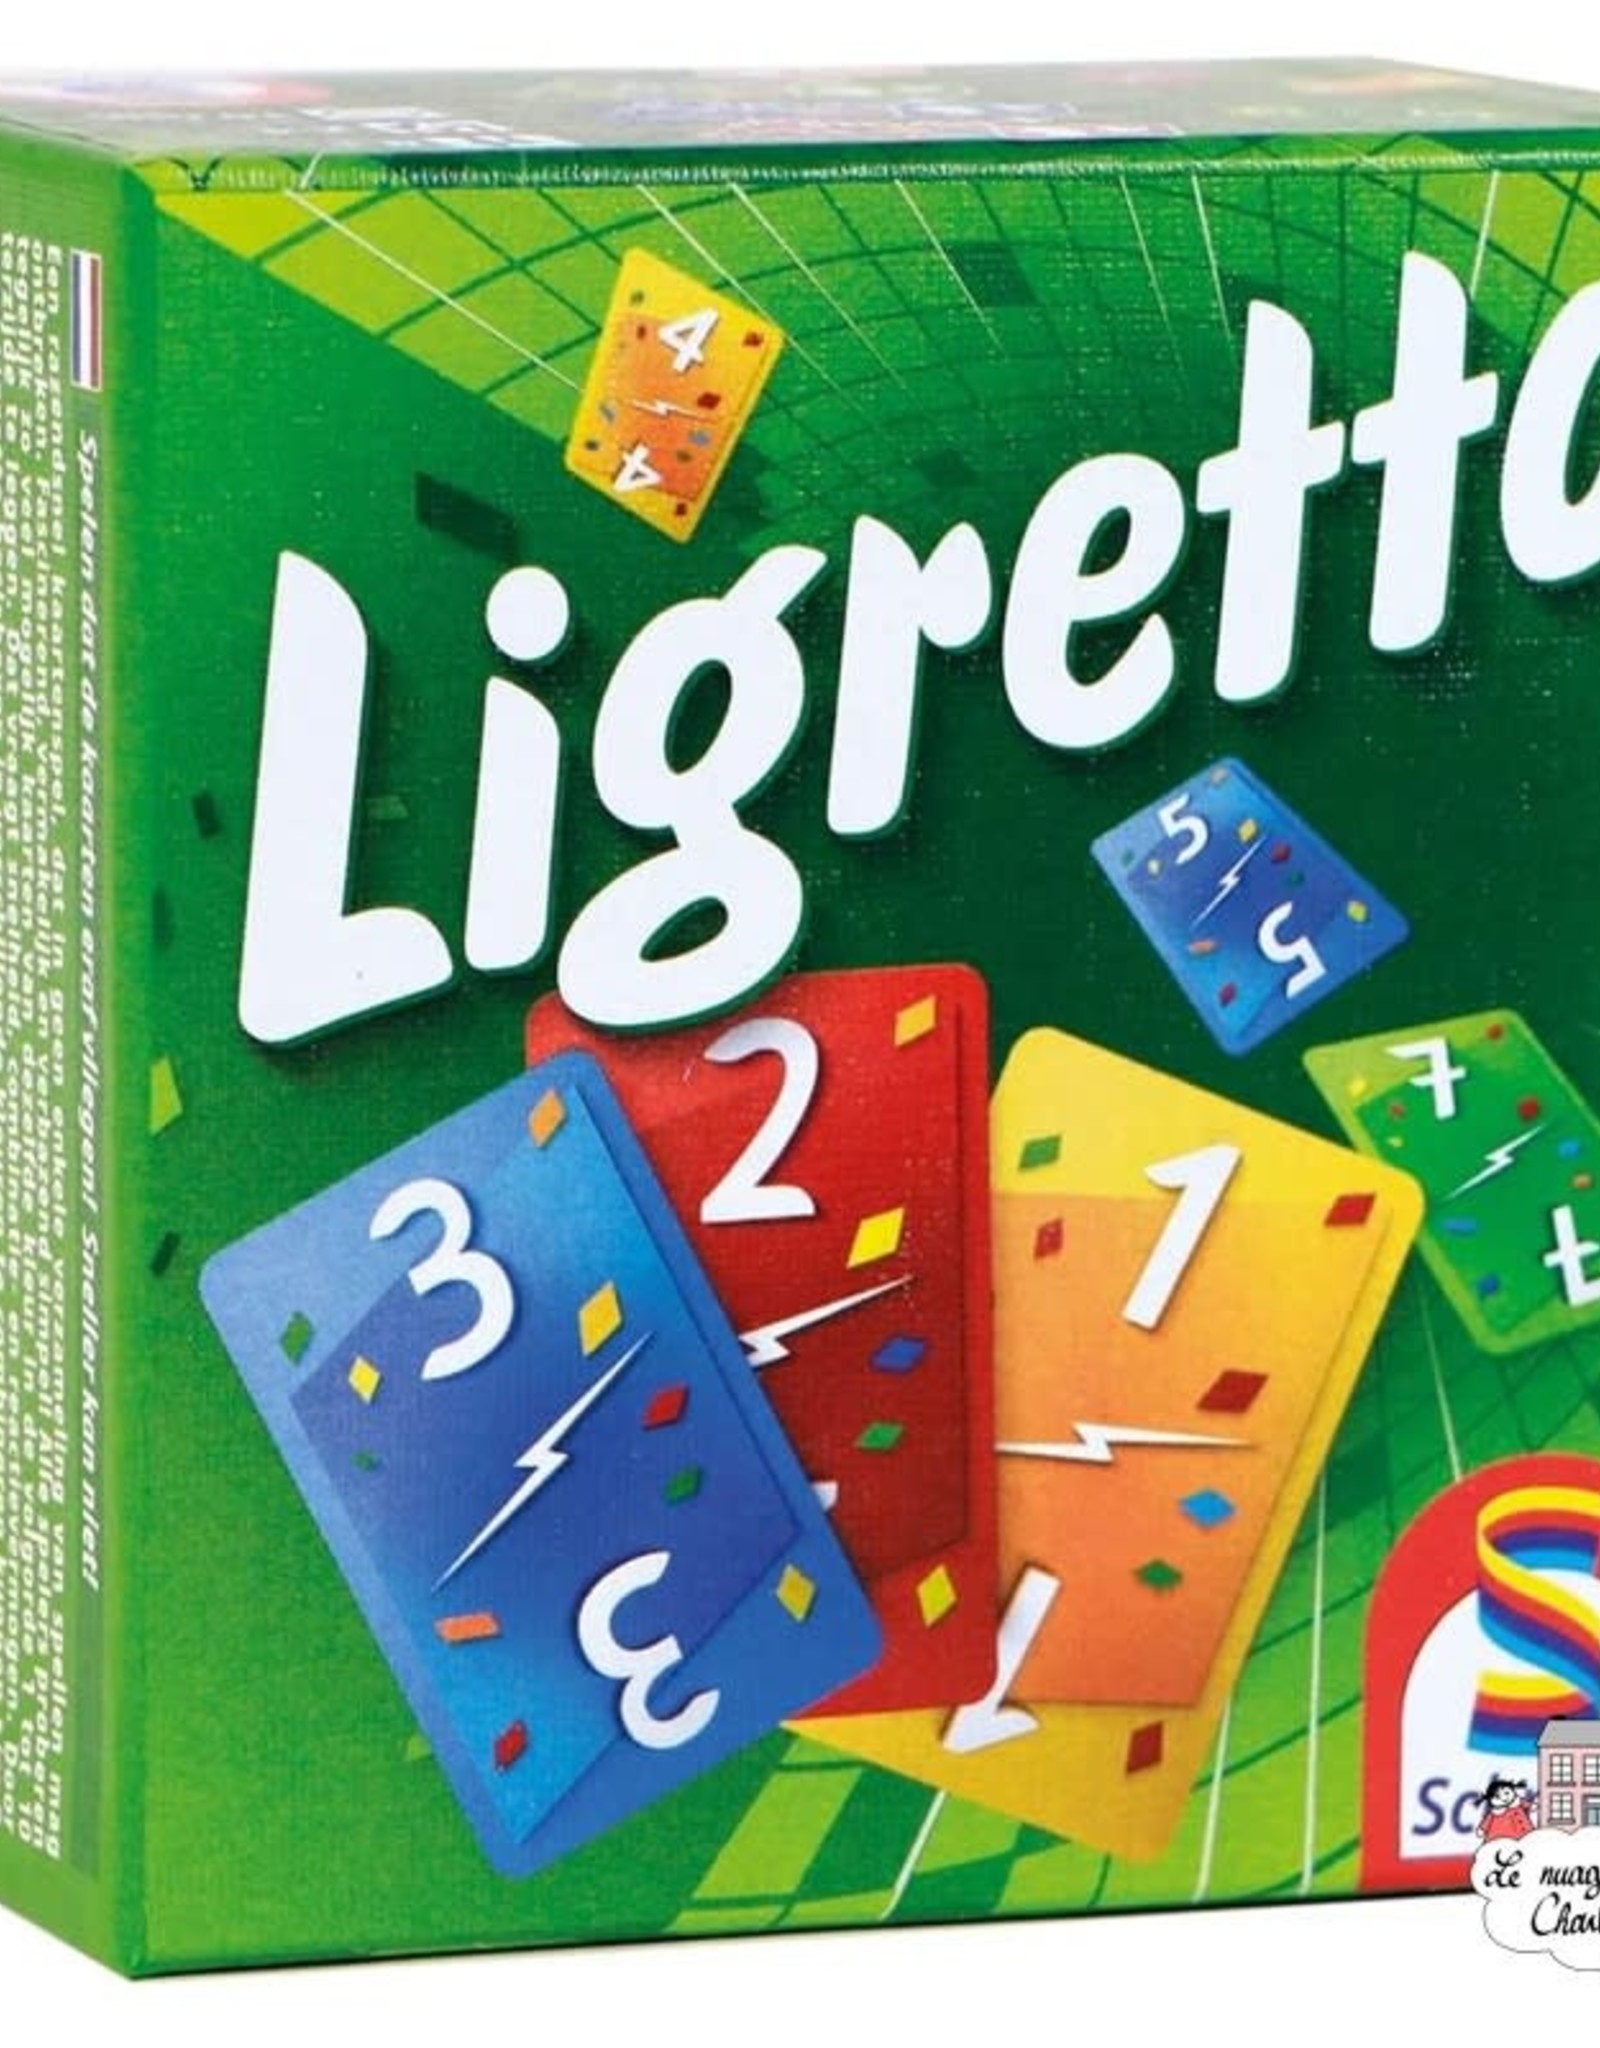 Schmidt Ligretto - Green